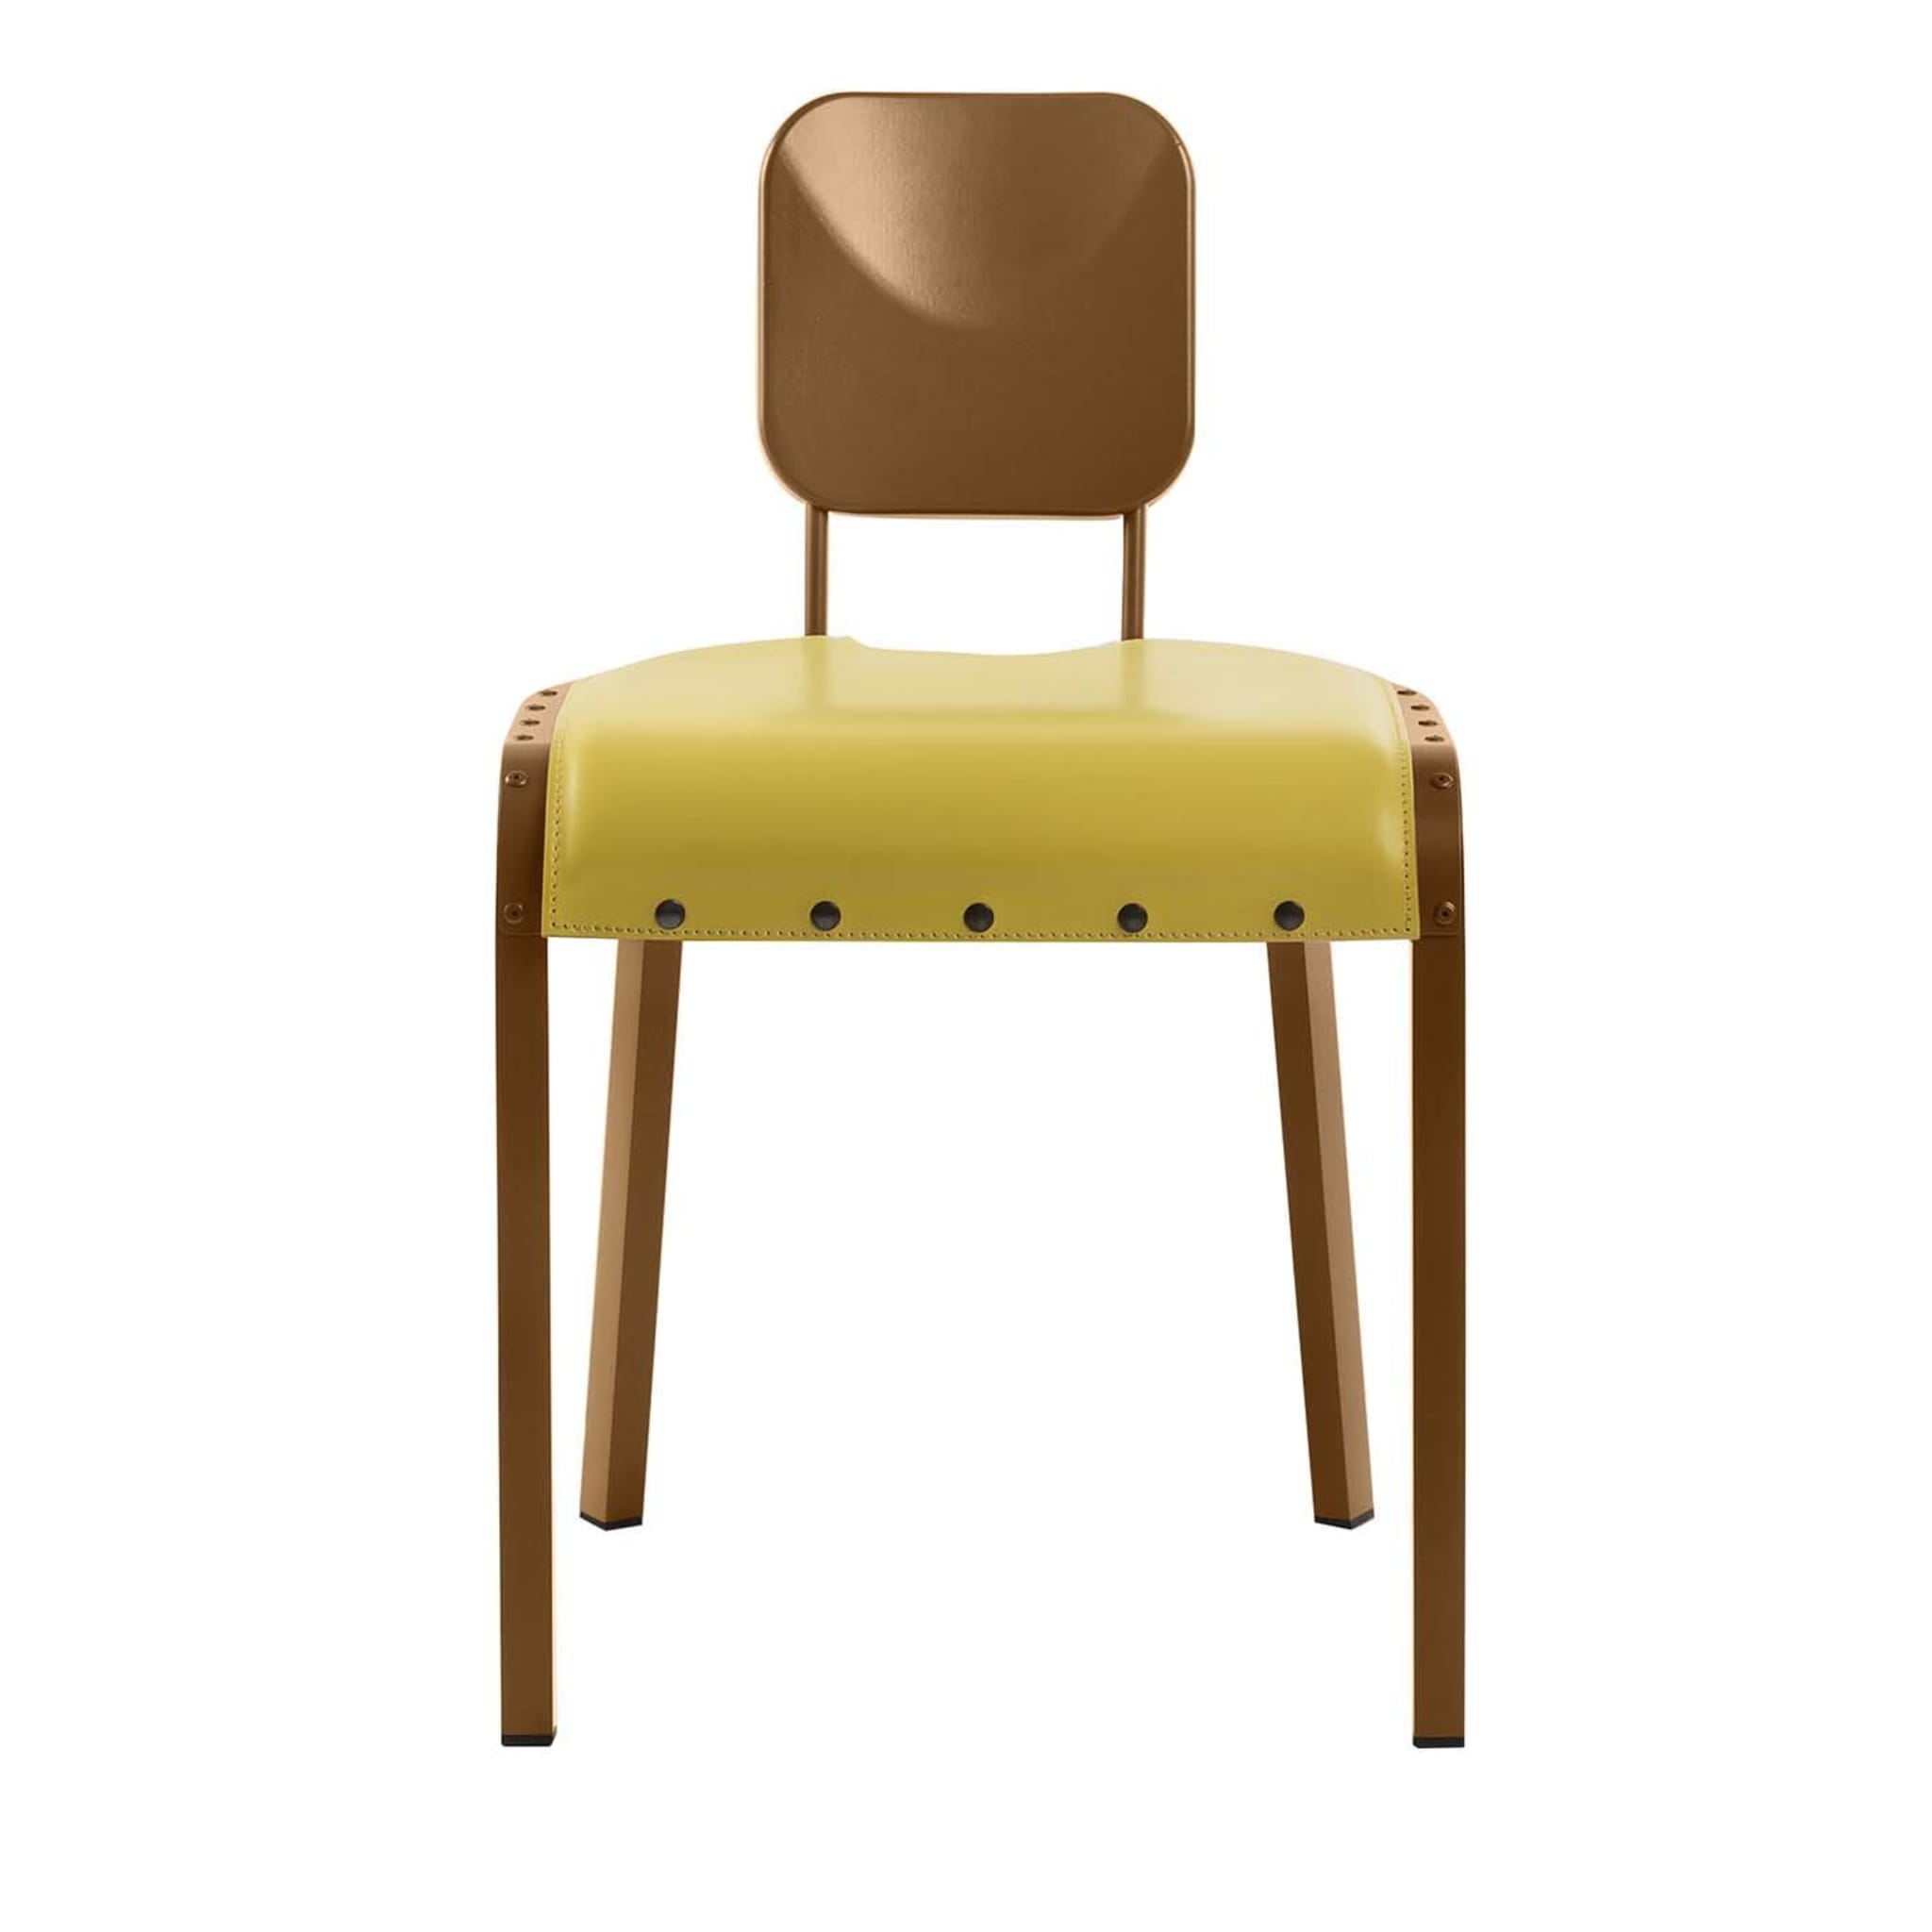 Rock4 Stuhl mit gelbem Ledersitz von Marc Sadler - Hauptansicht